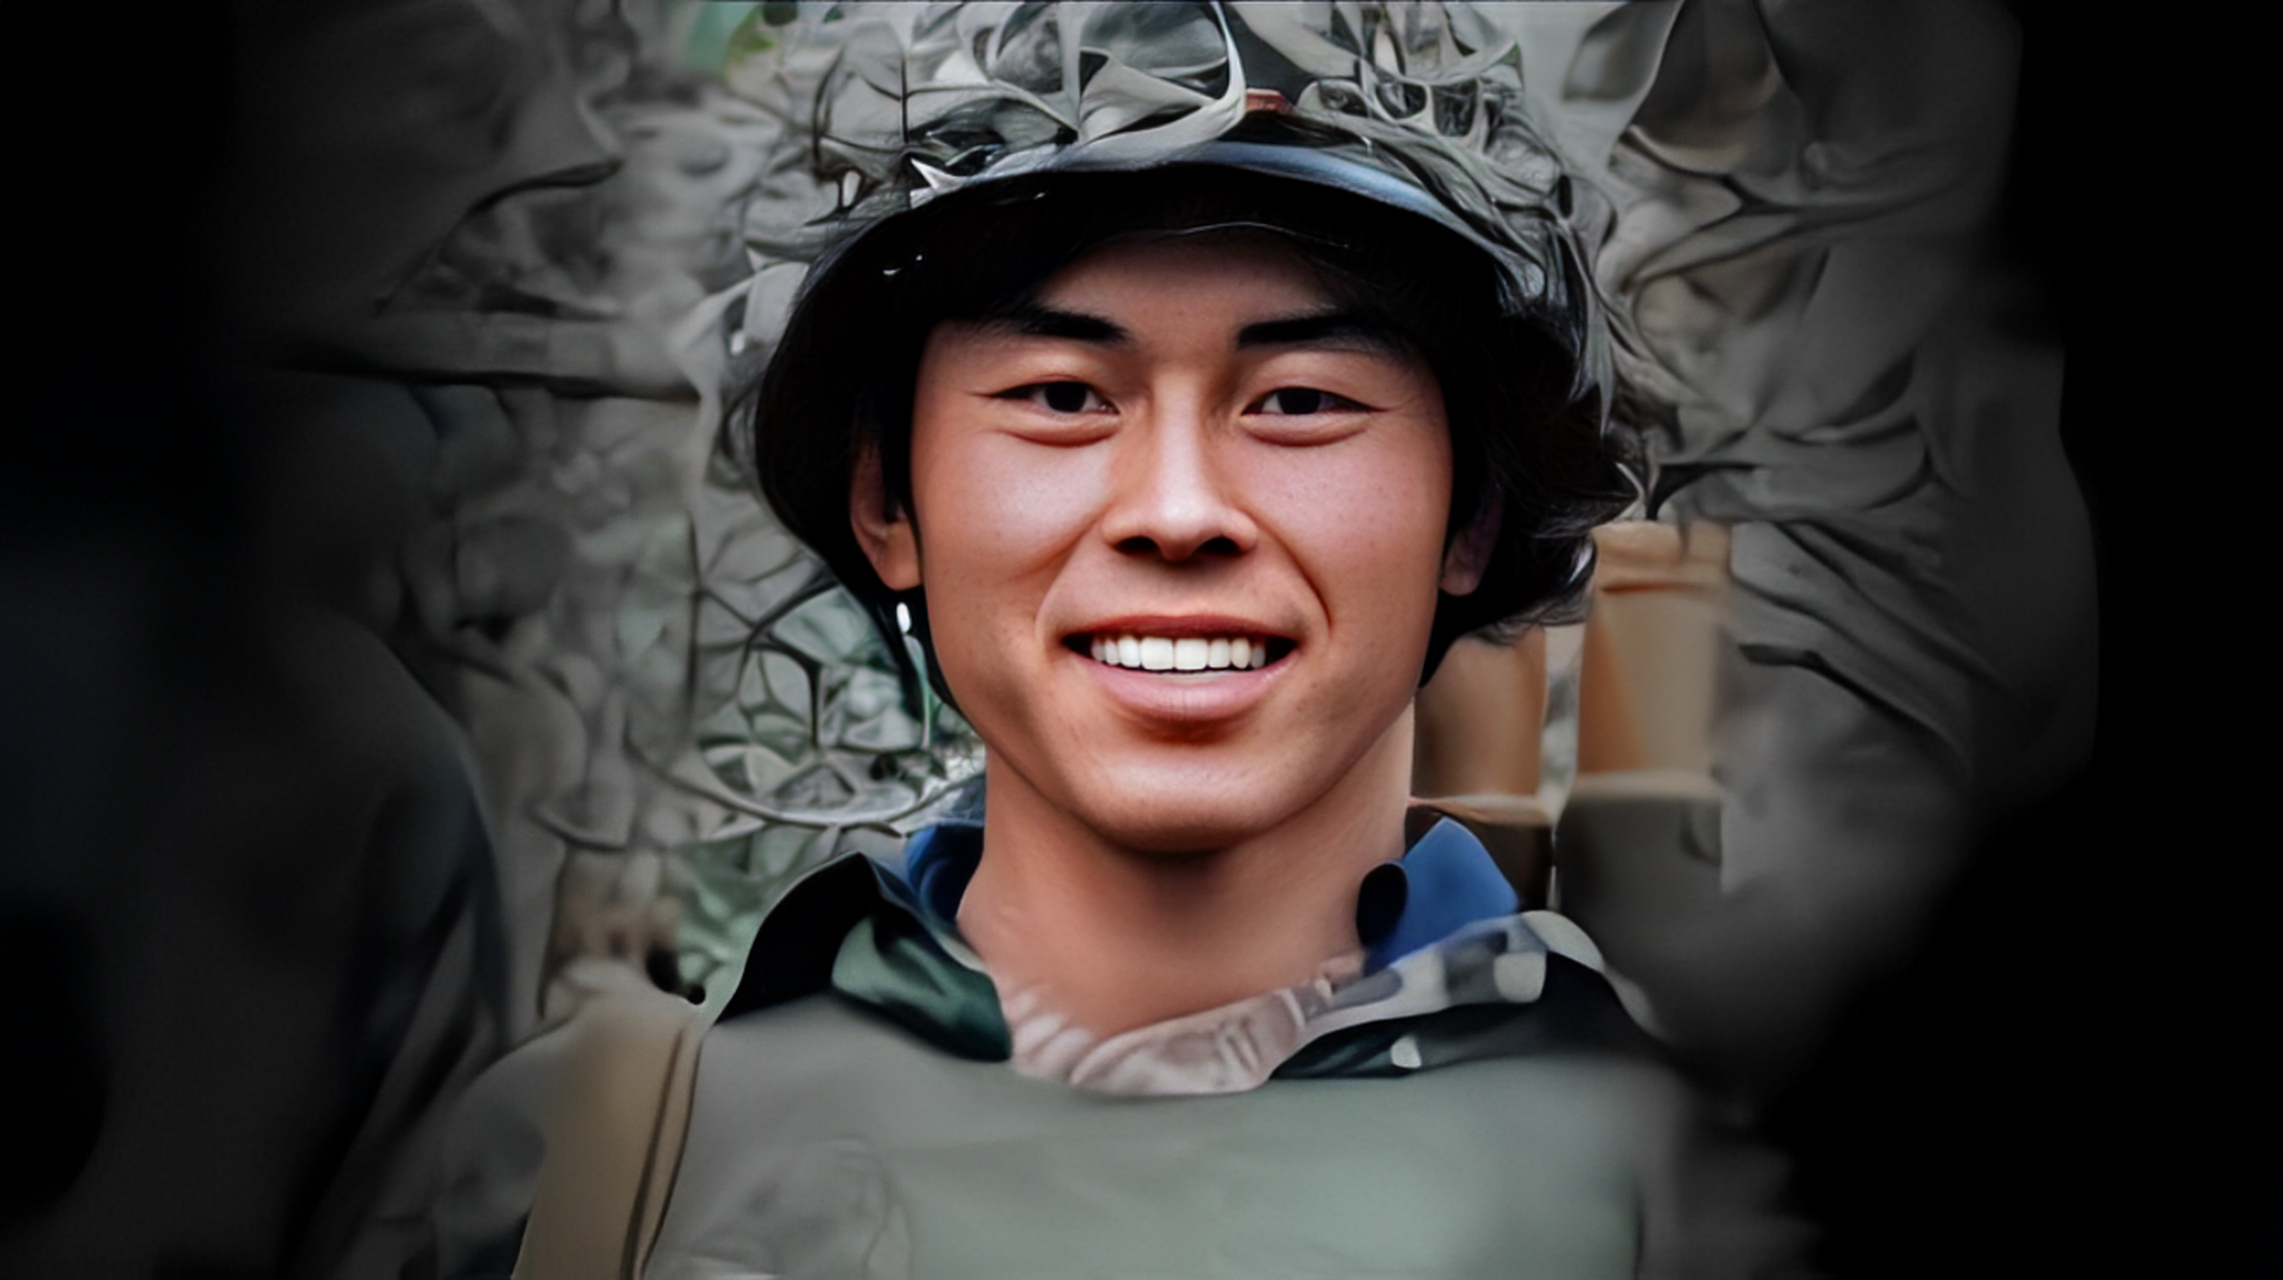 英雄烈士马占福,在越南战争中执行黑豹行动时牺牲,年仅20岁!